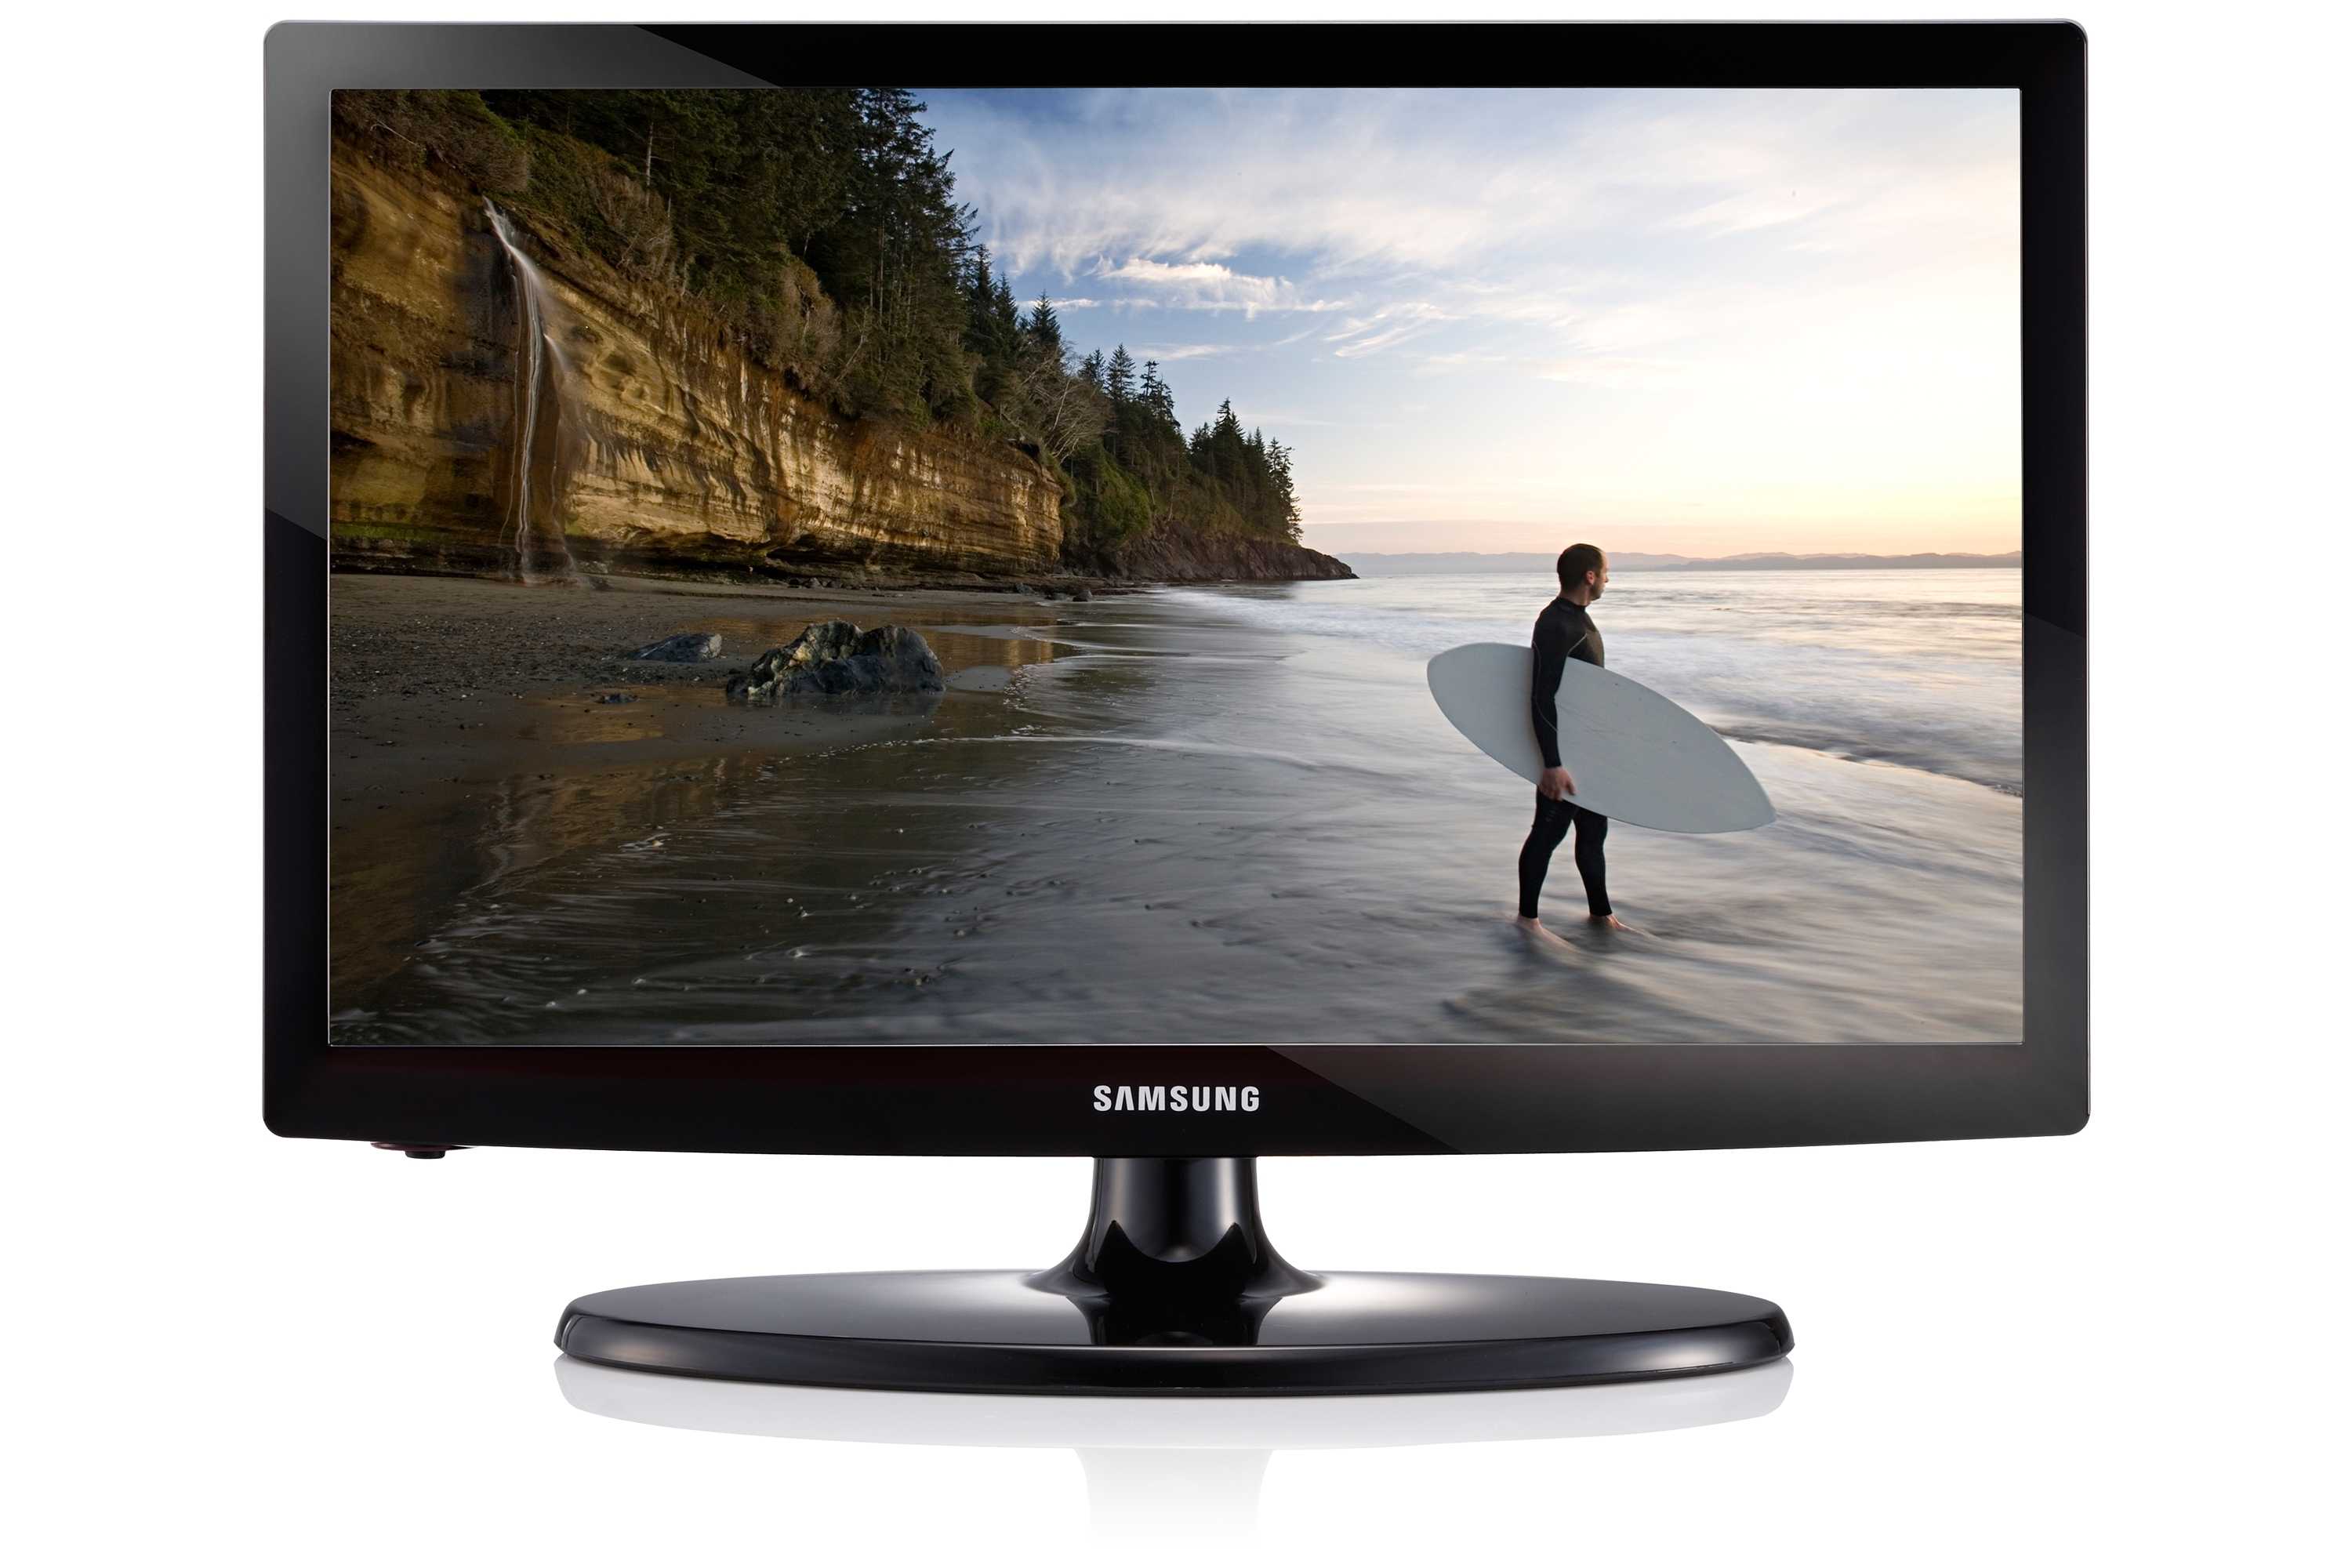 Samsung ue55es8007 - купить , скидки, цена, отзывы, обзор, характеристики - телевизоры